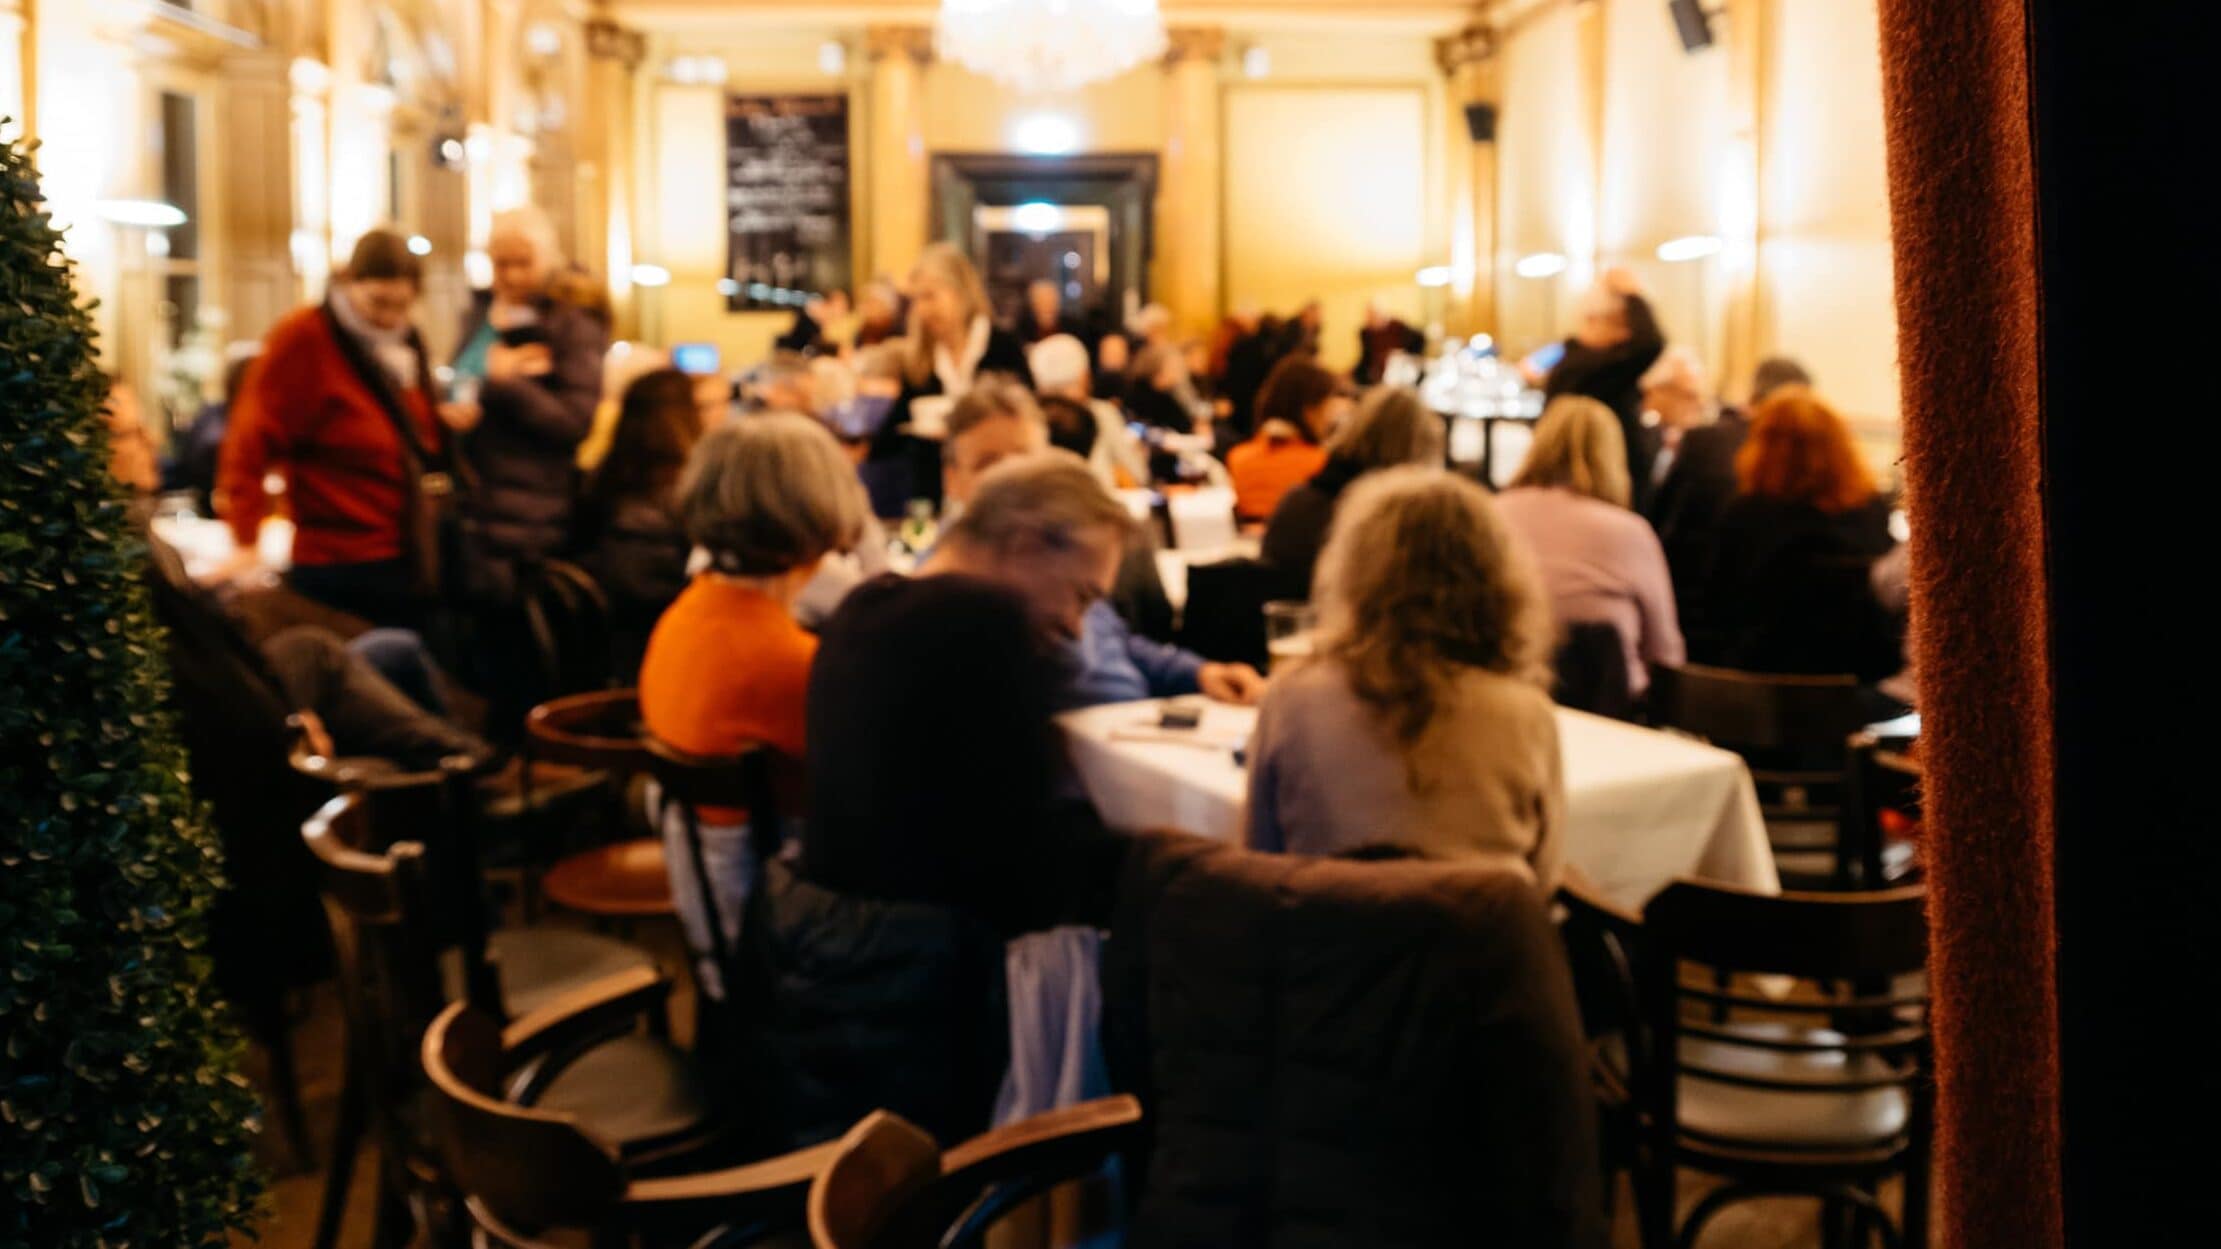 Personen sind gerade dabei ihre Plätze einzunehmen für eine Lesung im Literaturhaus.© Kathrine Uldbæk Nielsen